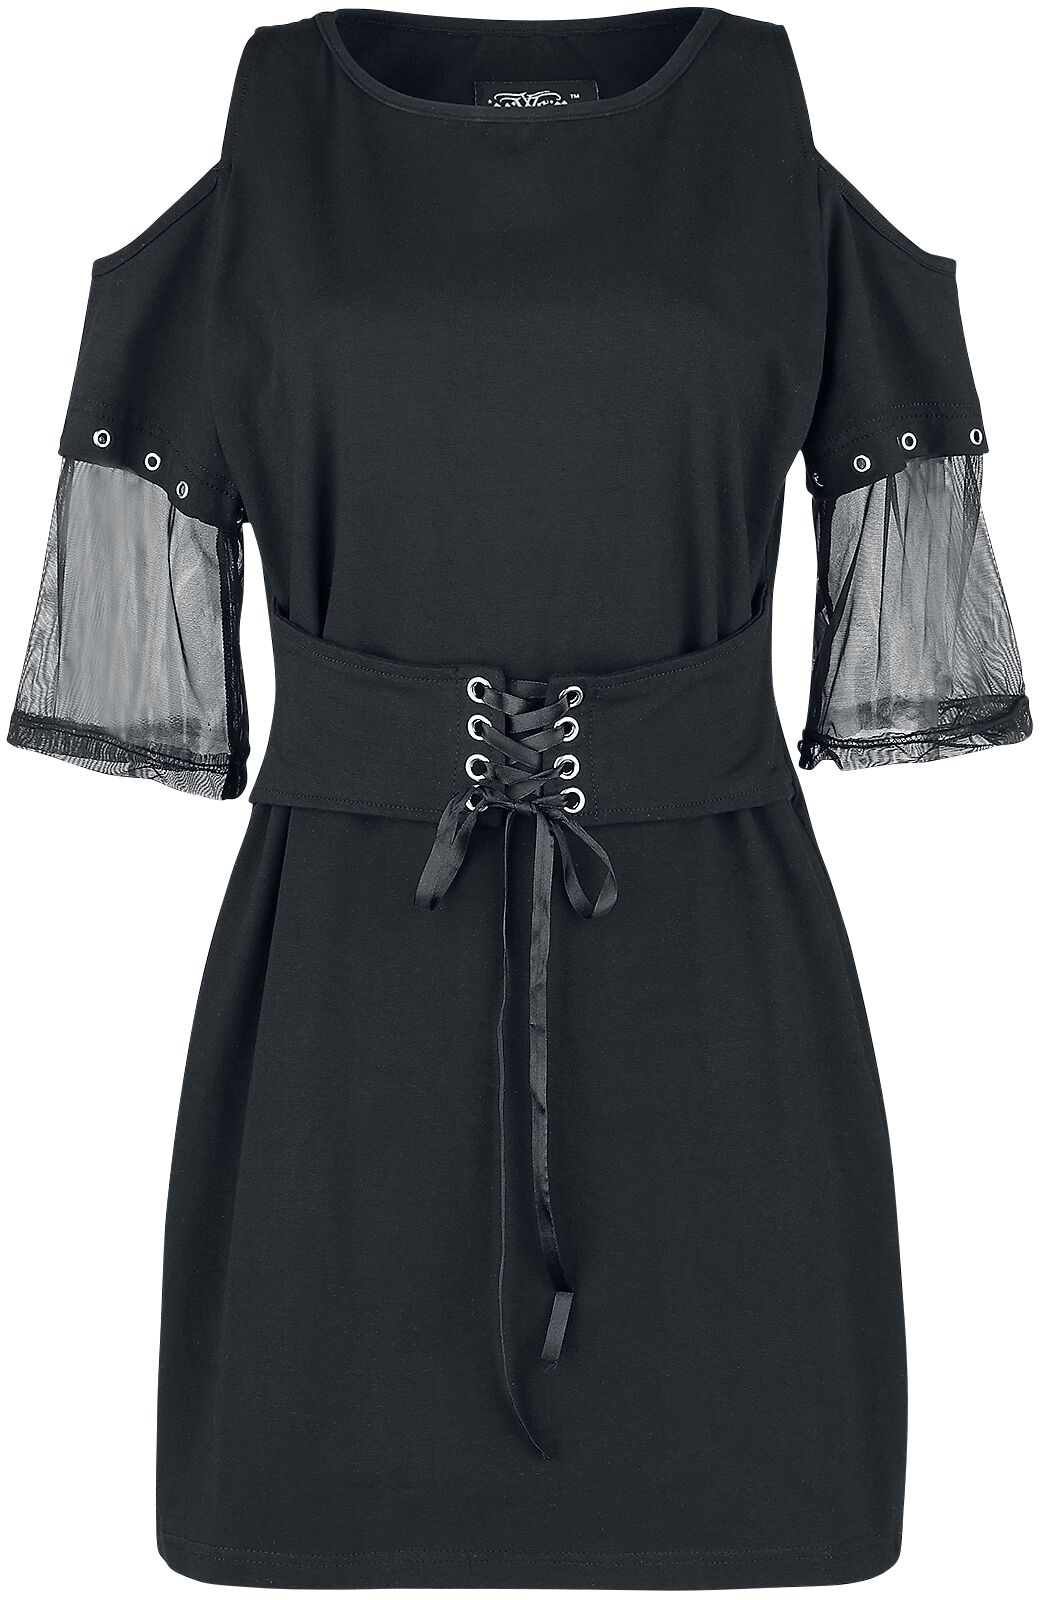 Robe courte Gothic de Vixxsin - Haut Shriek - S - pour Femme - noir